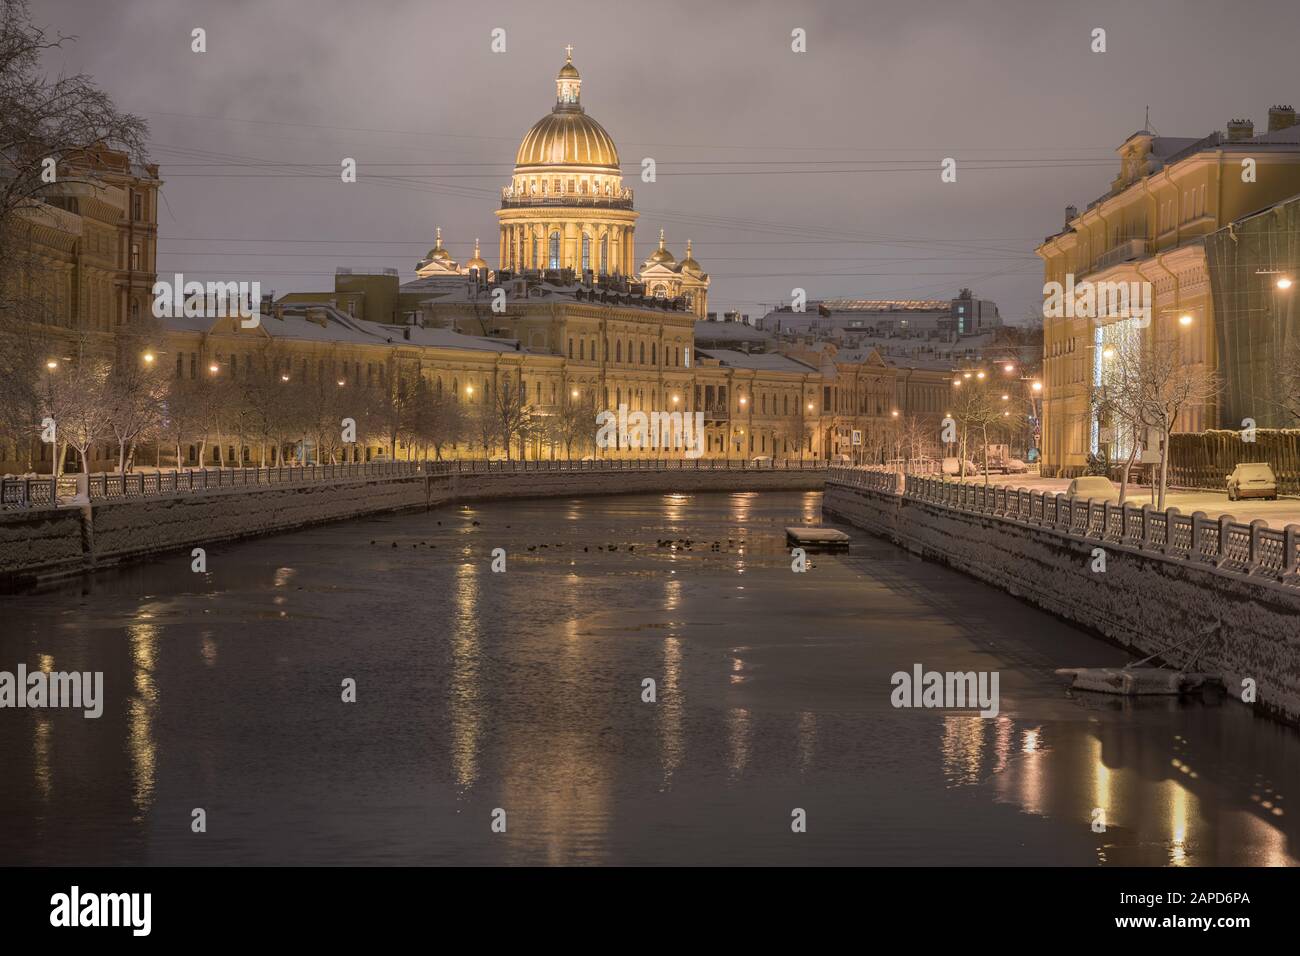 Dezember in Sankt Petersburg, Russland statt. Die Kathedrale von St. Isaac und der Fluss Moyka nach Schneefall in der Dunkelheit am frühen Morgen Stockfoto